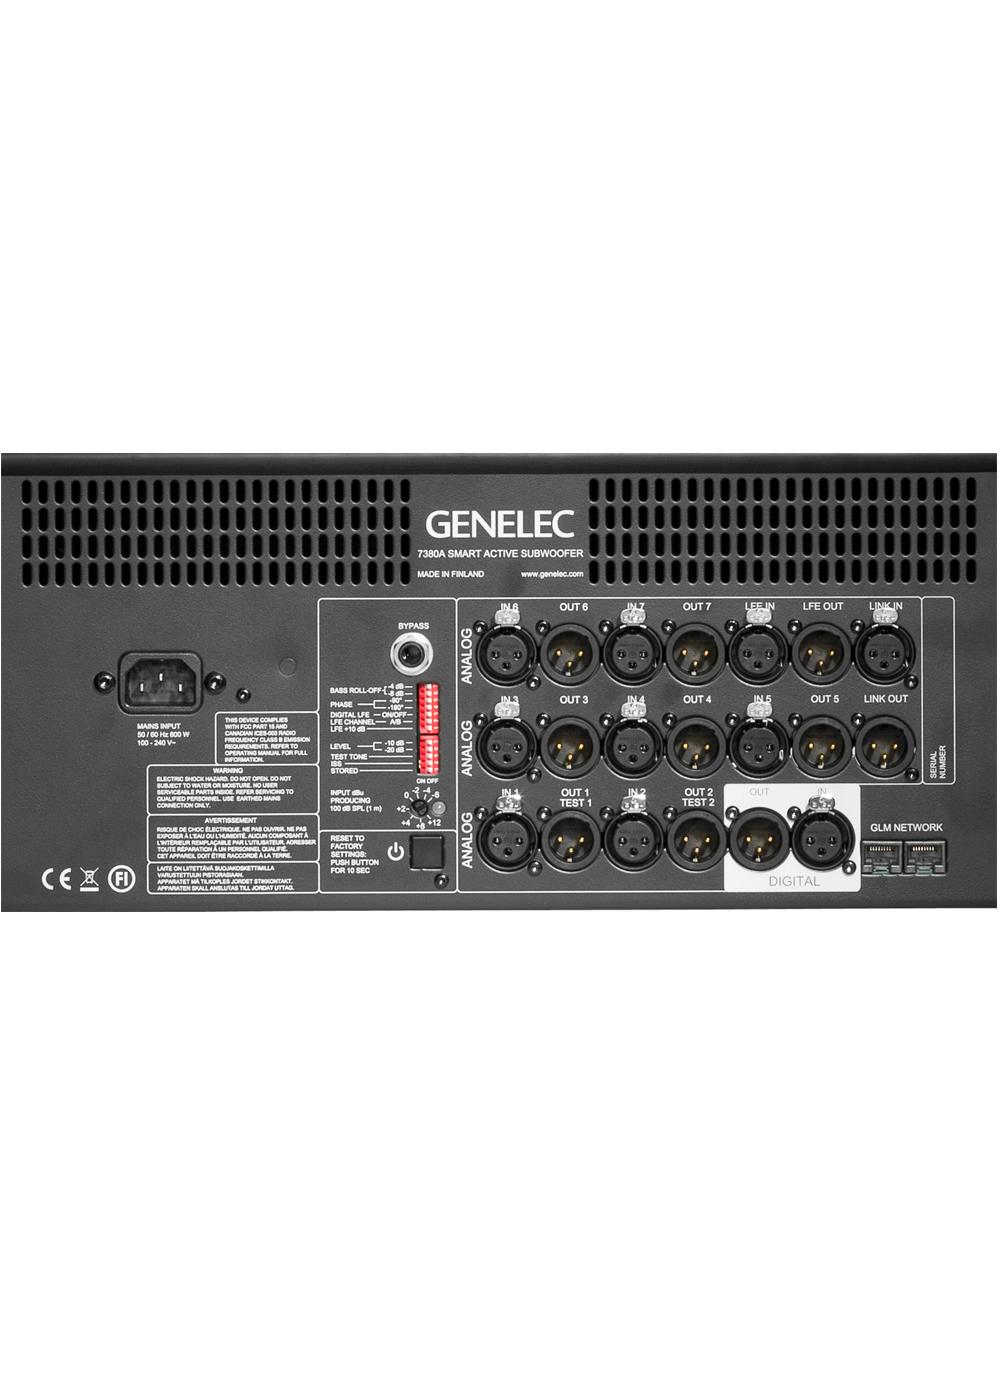 GENELEC 7380AP активный сабвуфер, НЧ динамик 15", 800Вт. Опциональная настройка GLM калибратором. Черный